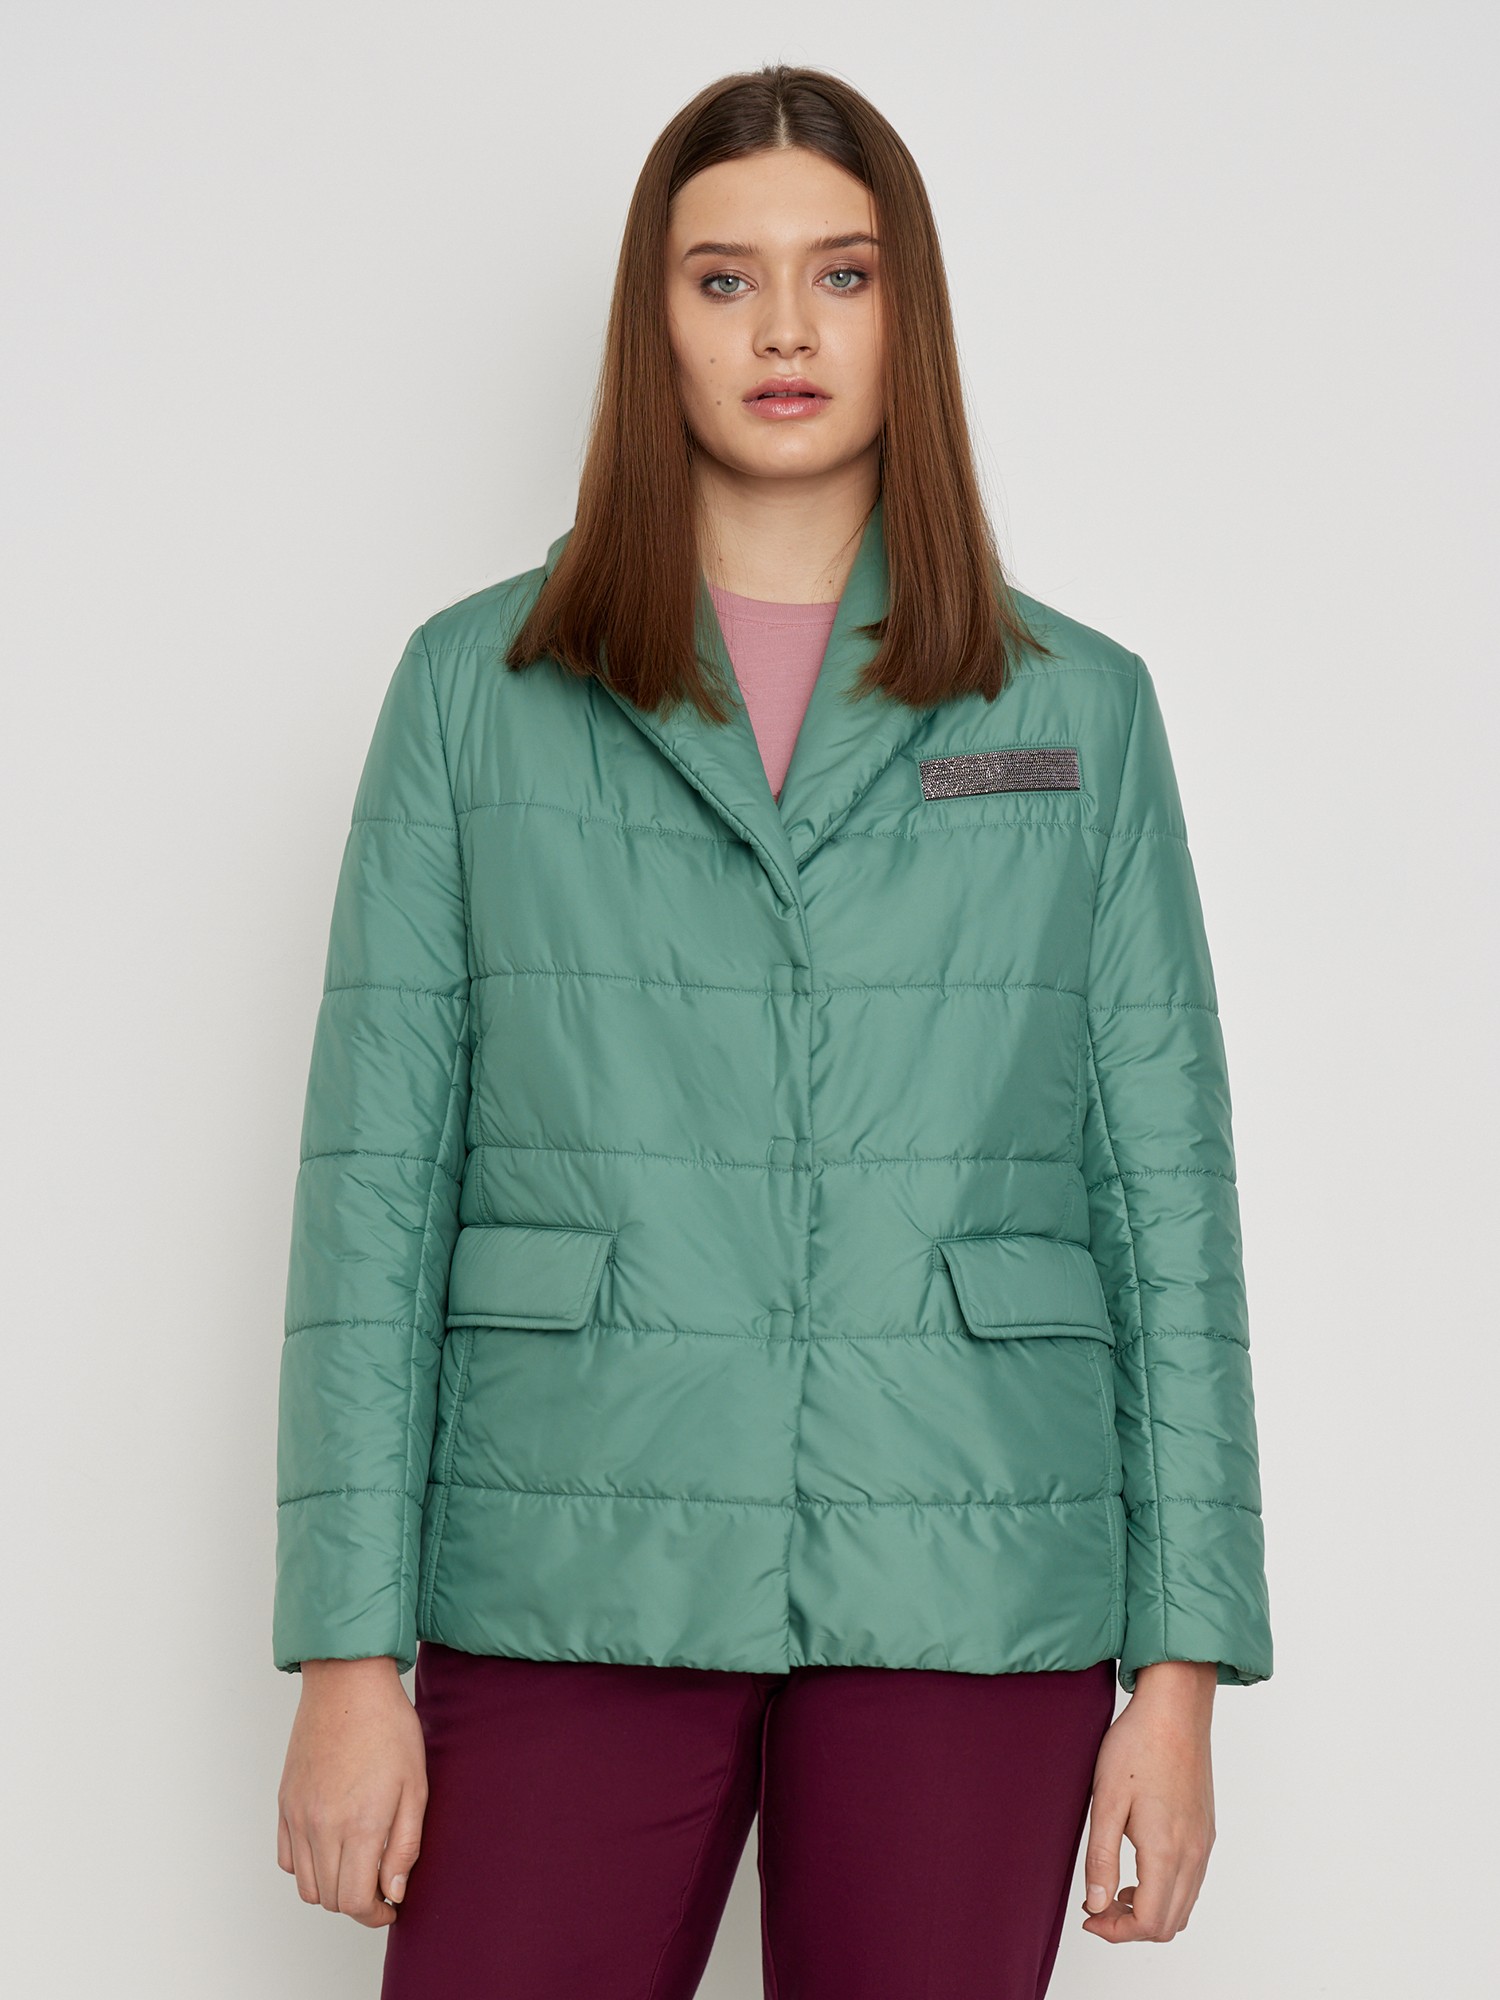 Куртка с утеплителем Lalis KD0001S, цвет светло-зеленый, размер 52